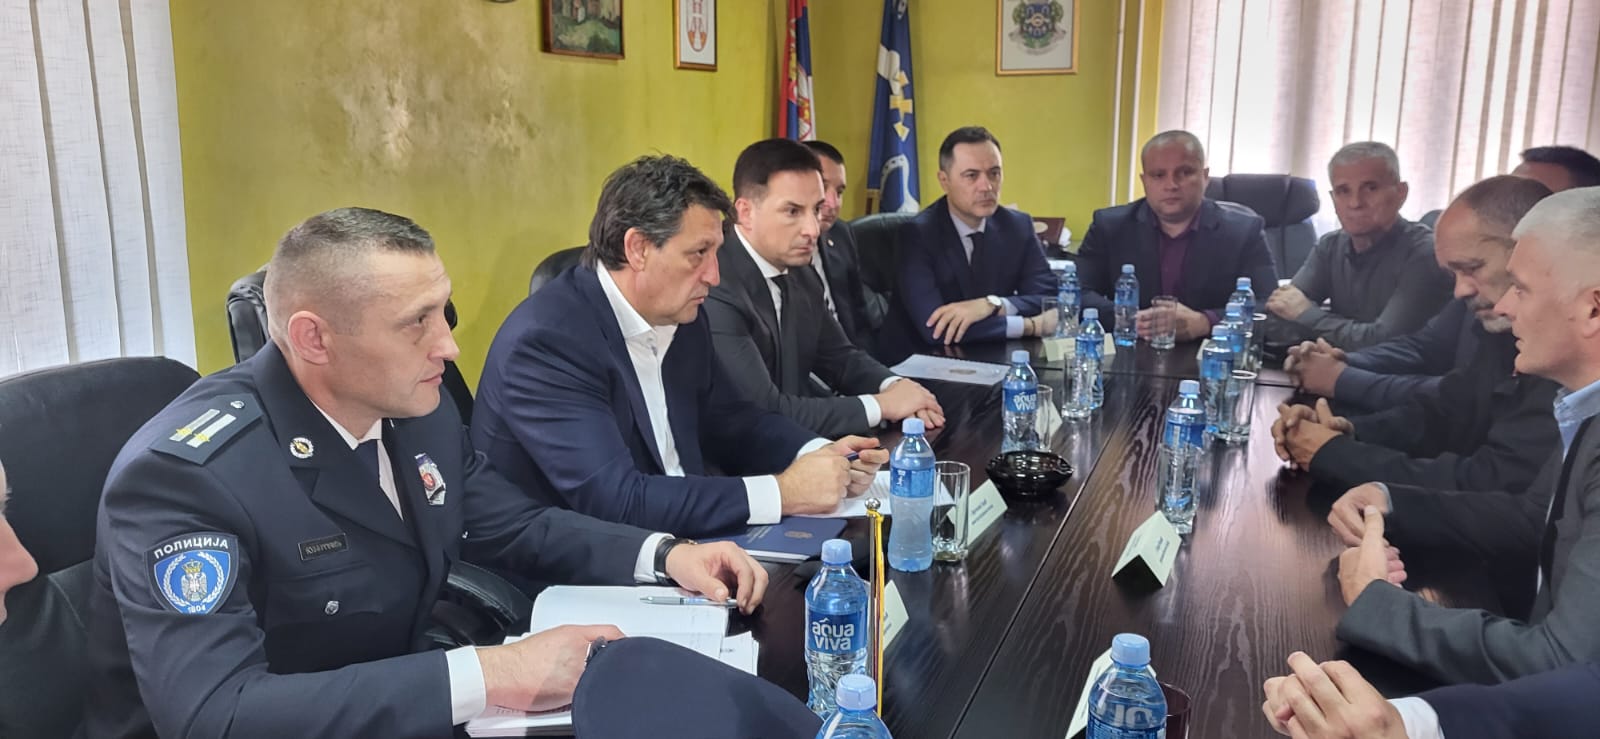 Ministar Gašić sa predstavnicima lokalne samouprave Priboj